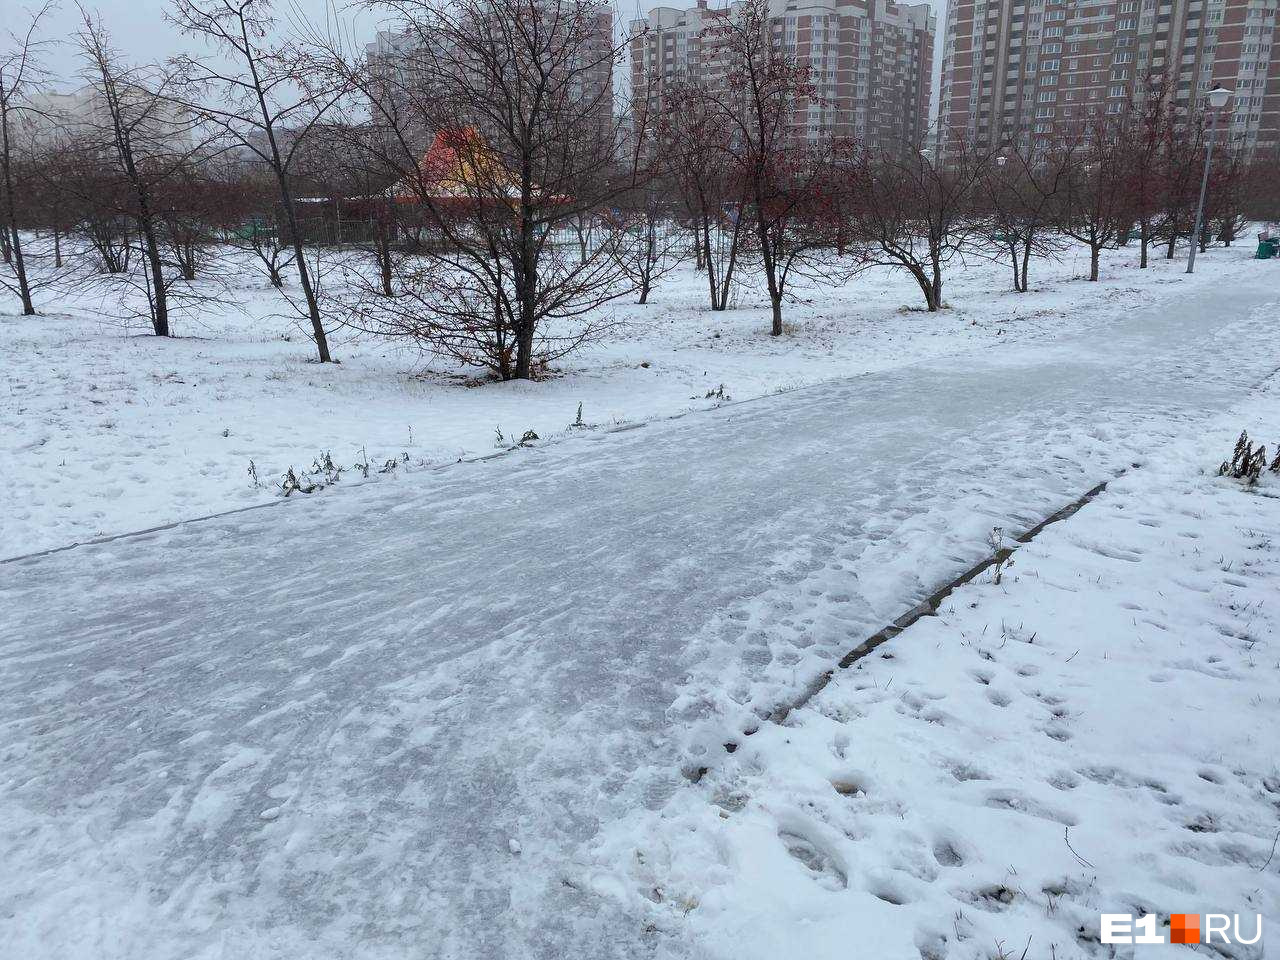 Зима пришла неожиданно: екатеринбуржцы пожаловались на обледеневшие тротуары